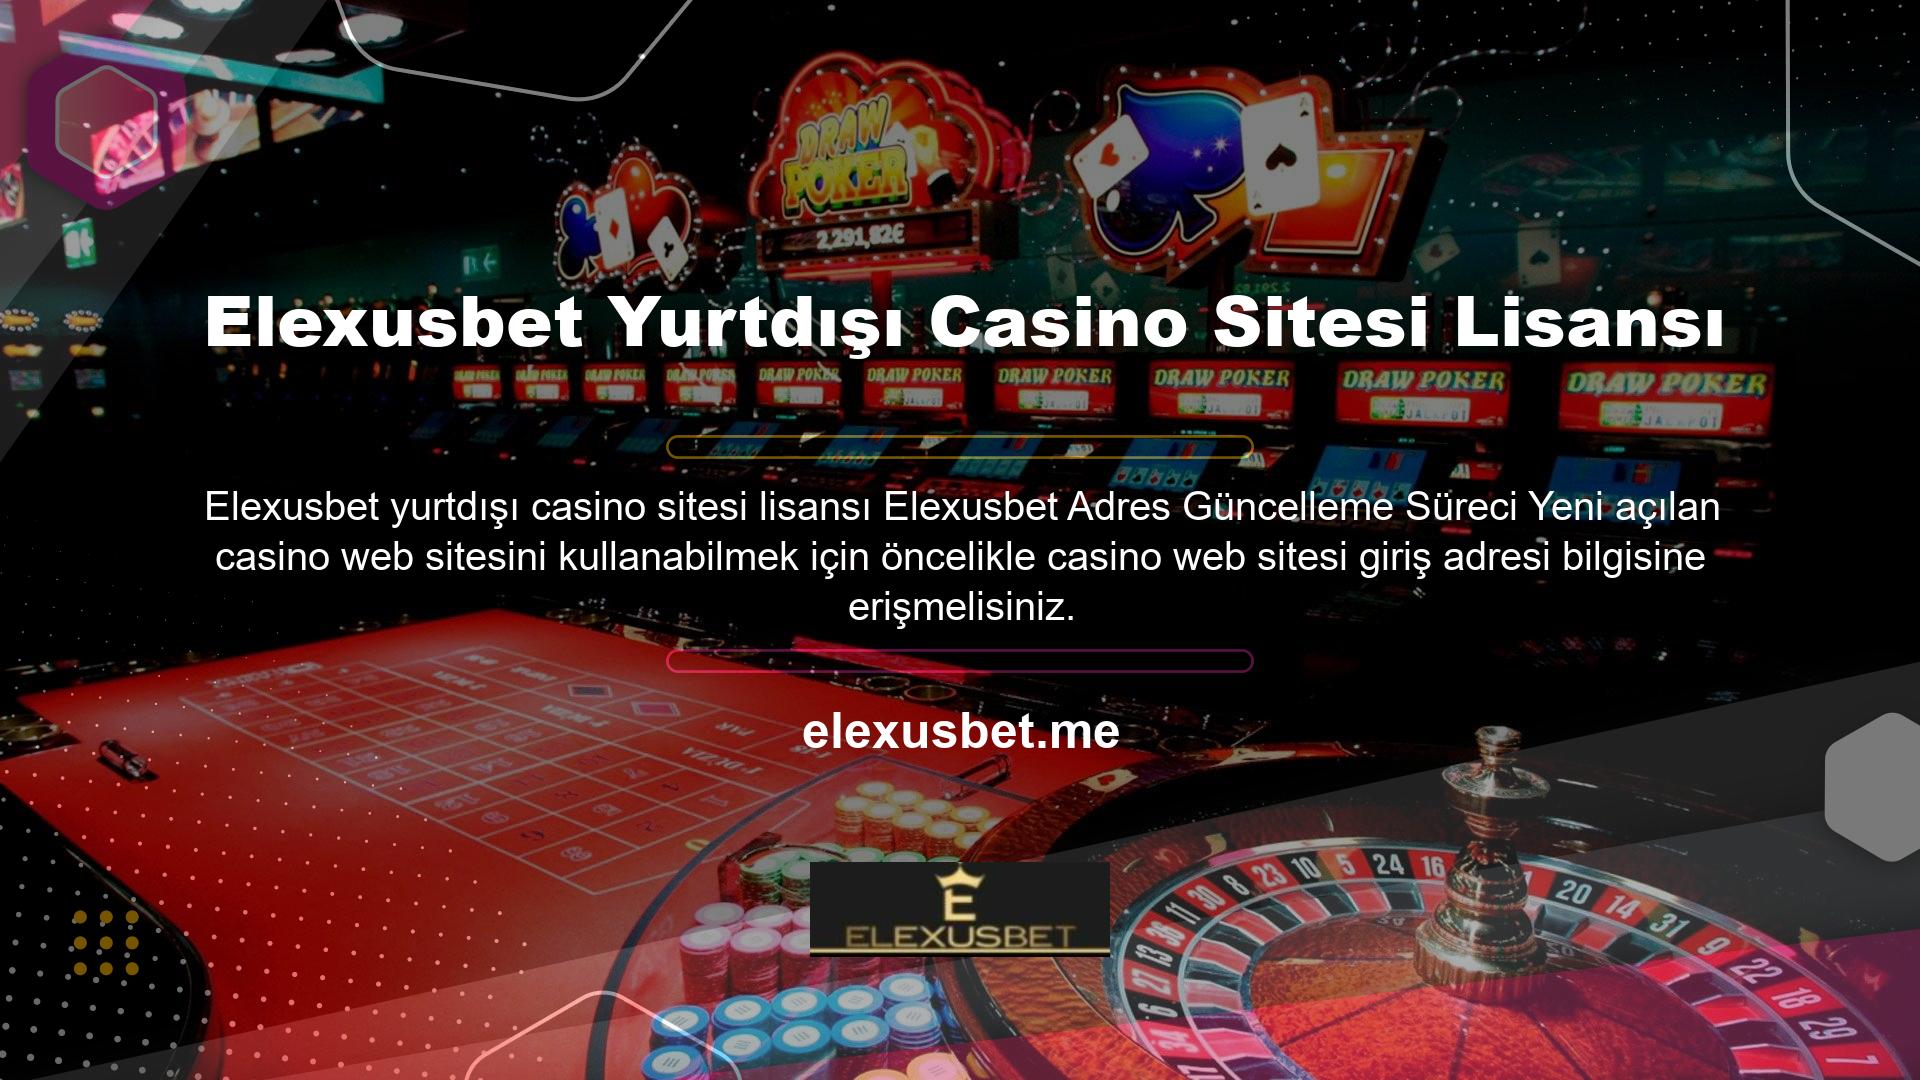 Web sitesini ziyaret ettiğinizde yeni açılan casino web sitesinin içeriğini kullanmaya başlayabilirsiniz